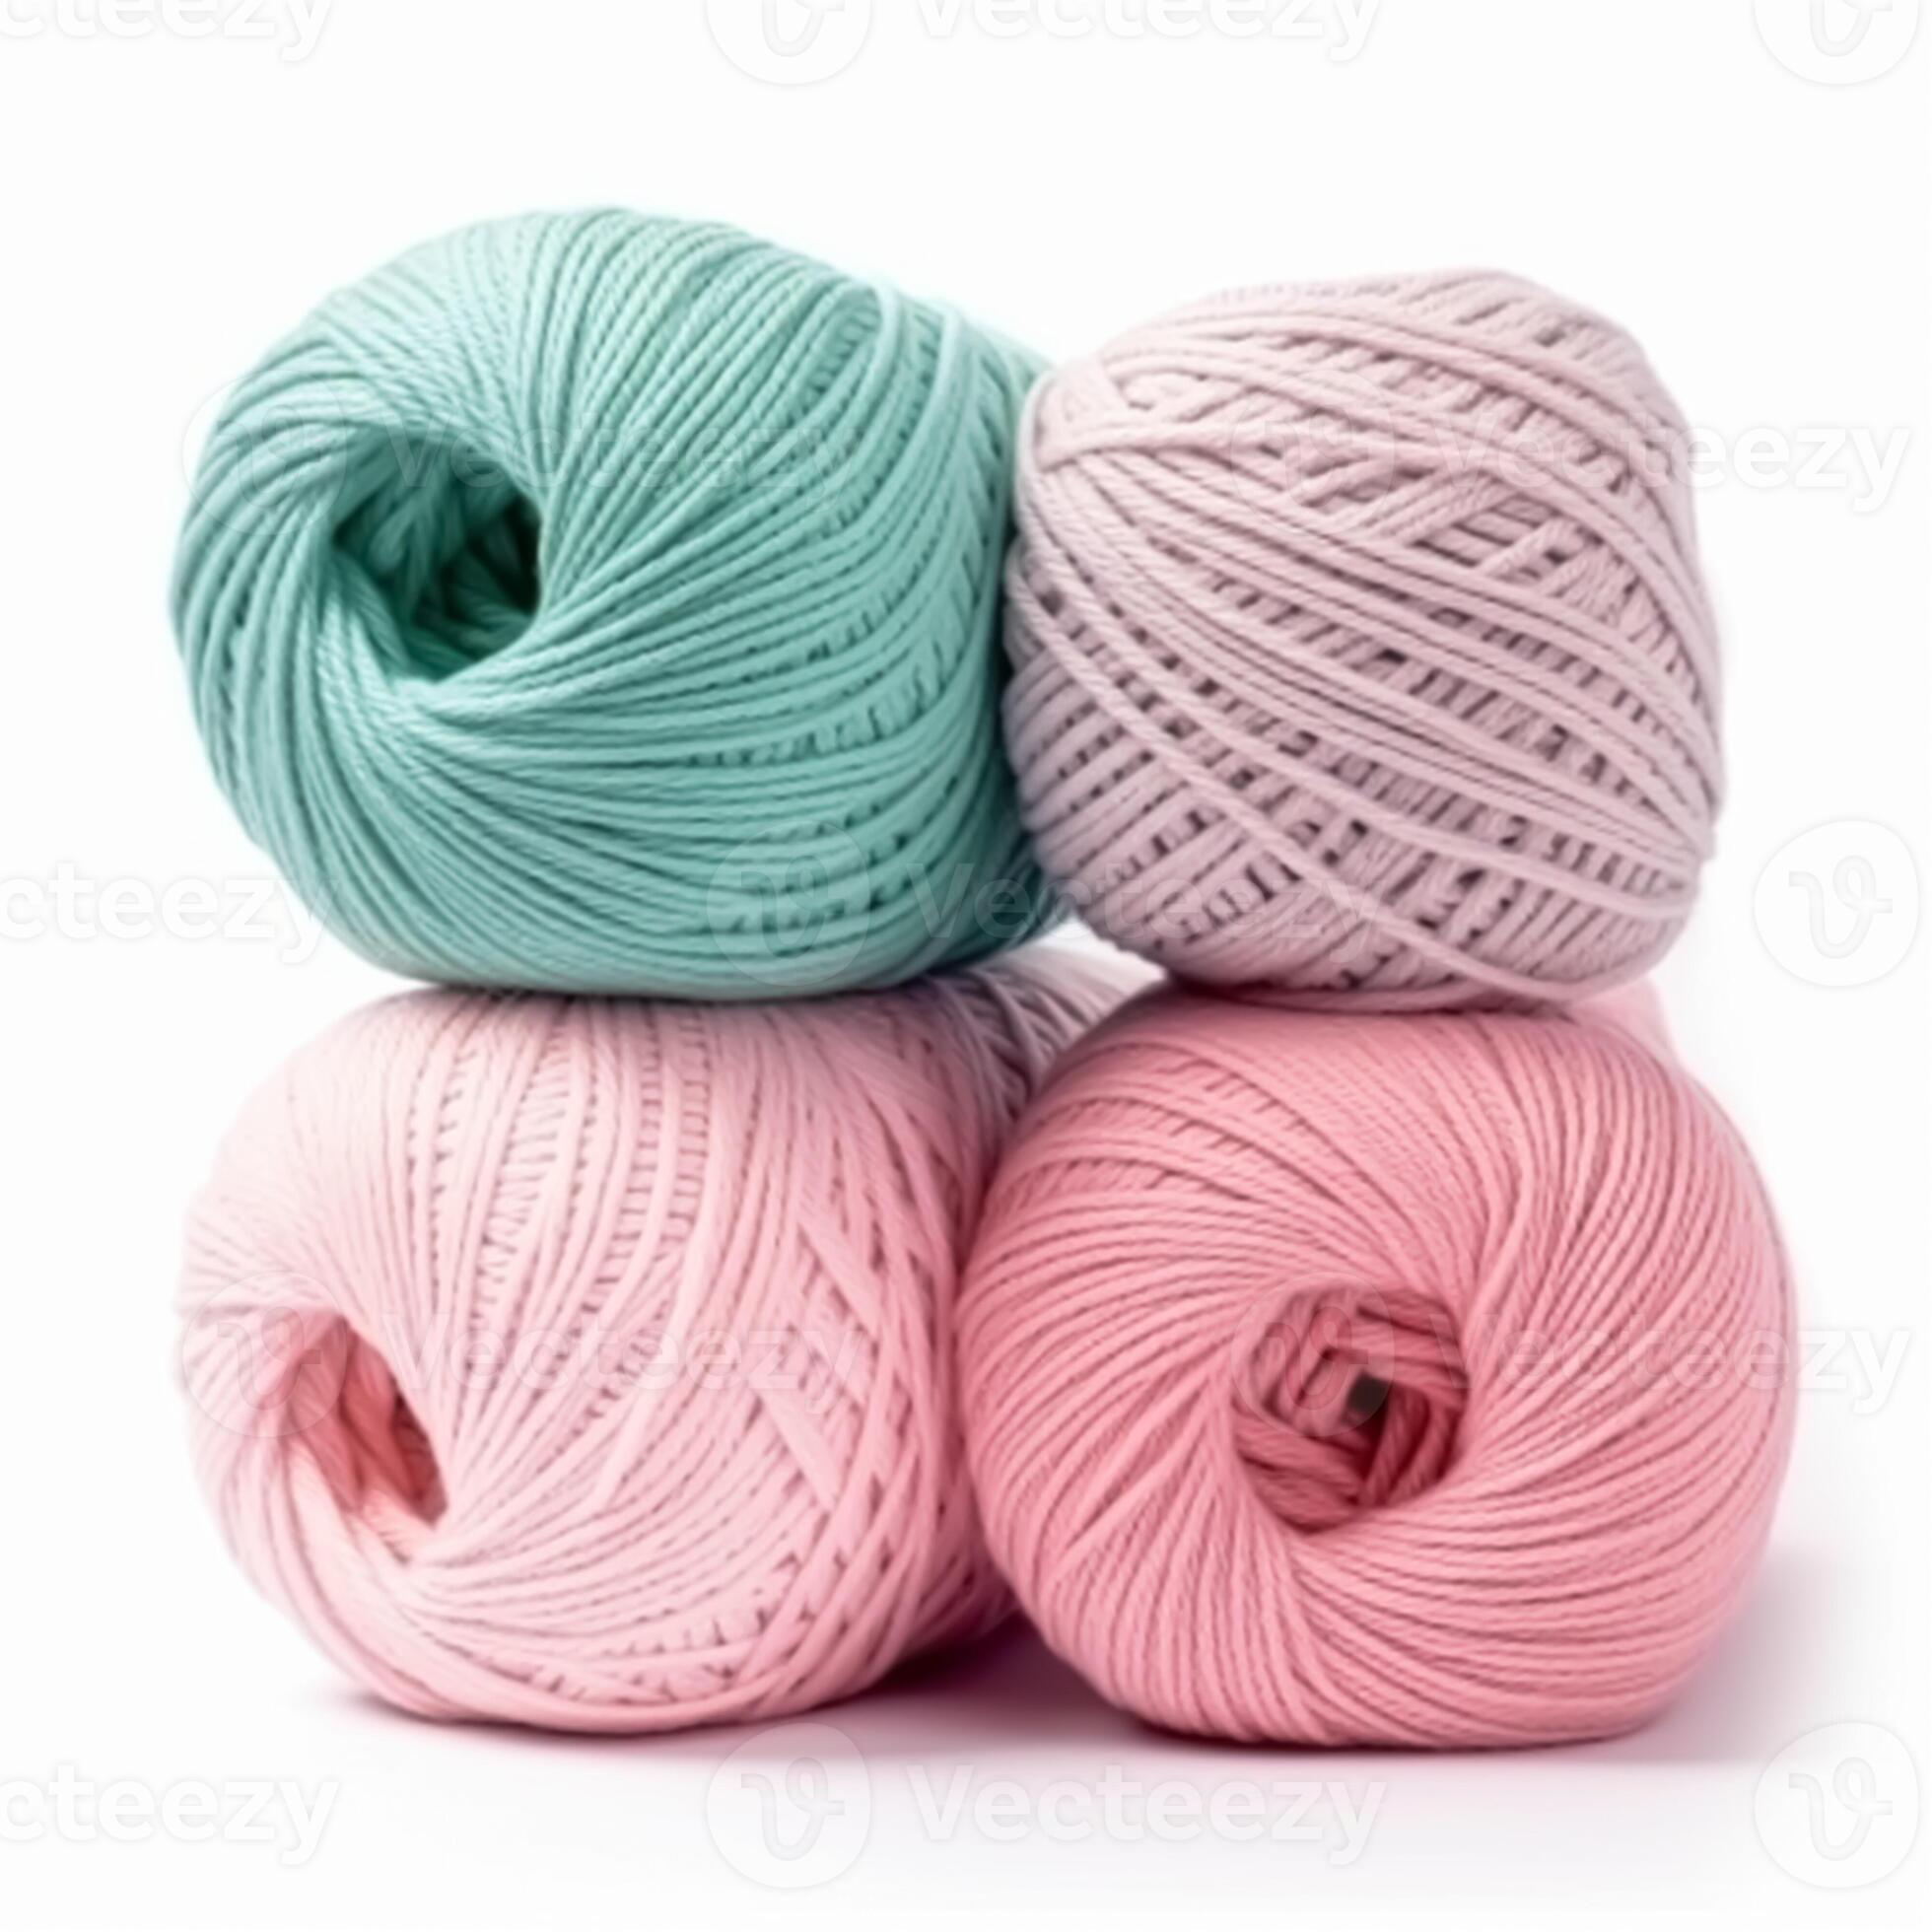 Fil coton pour tricot et crochet -100% BABY COTTON